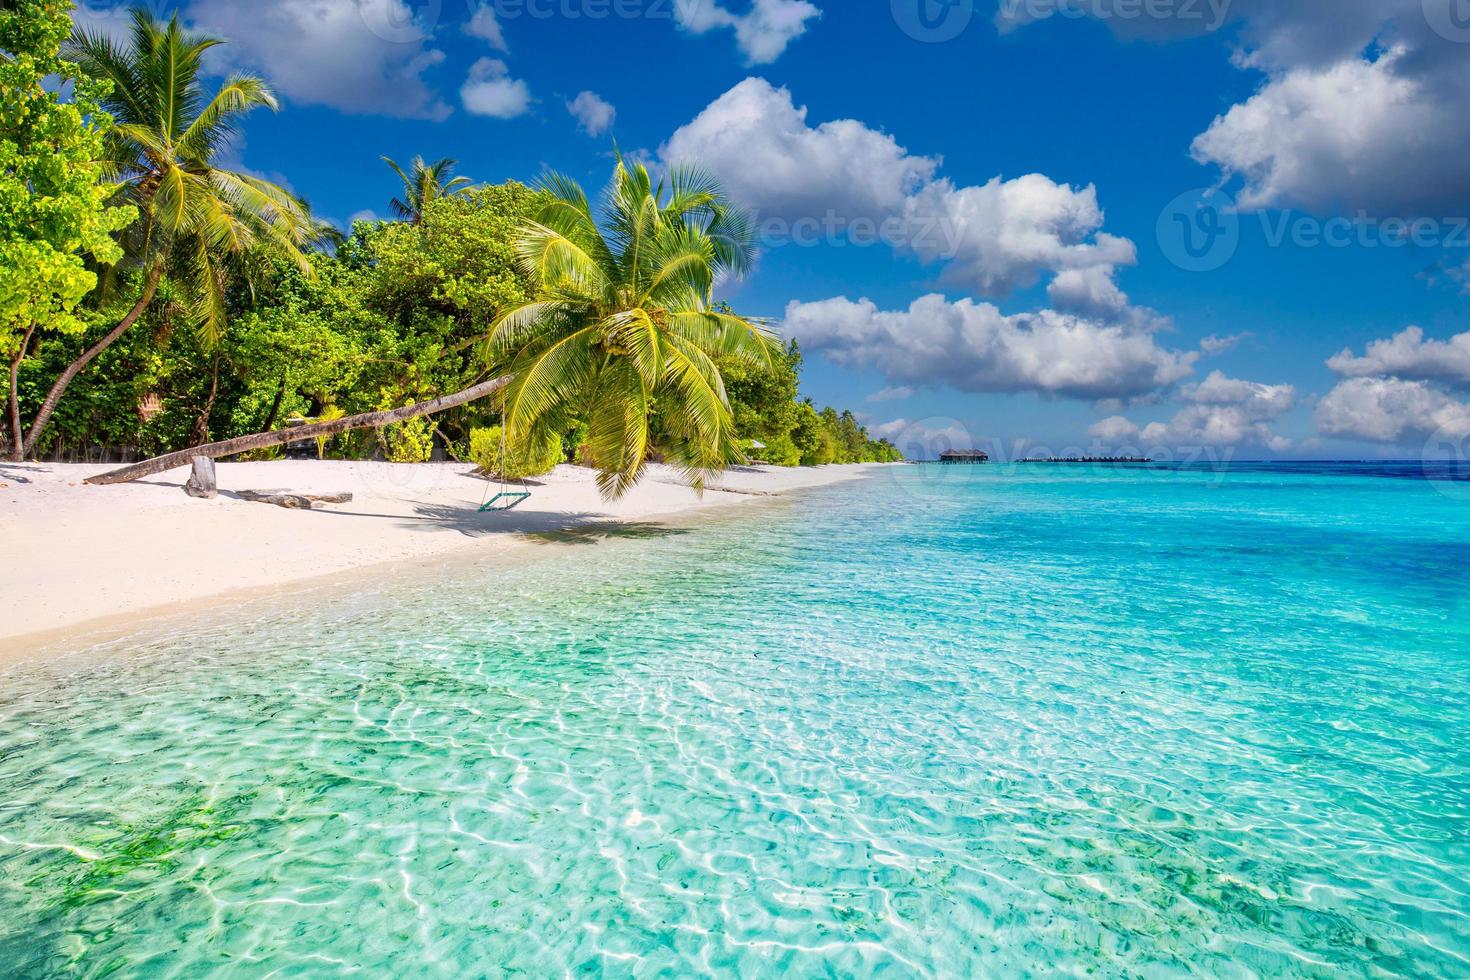 linda bandeira de praia tropical. areia branca e coqueiros, conceito de fundo panorâmico de turismo de viagens. paisagem de praia incrível. natureza da ilha de luxo, férias de aventura ou férias, foto